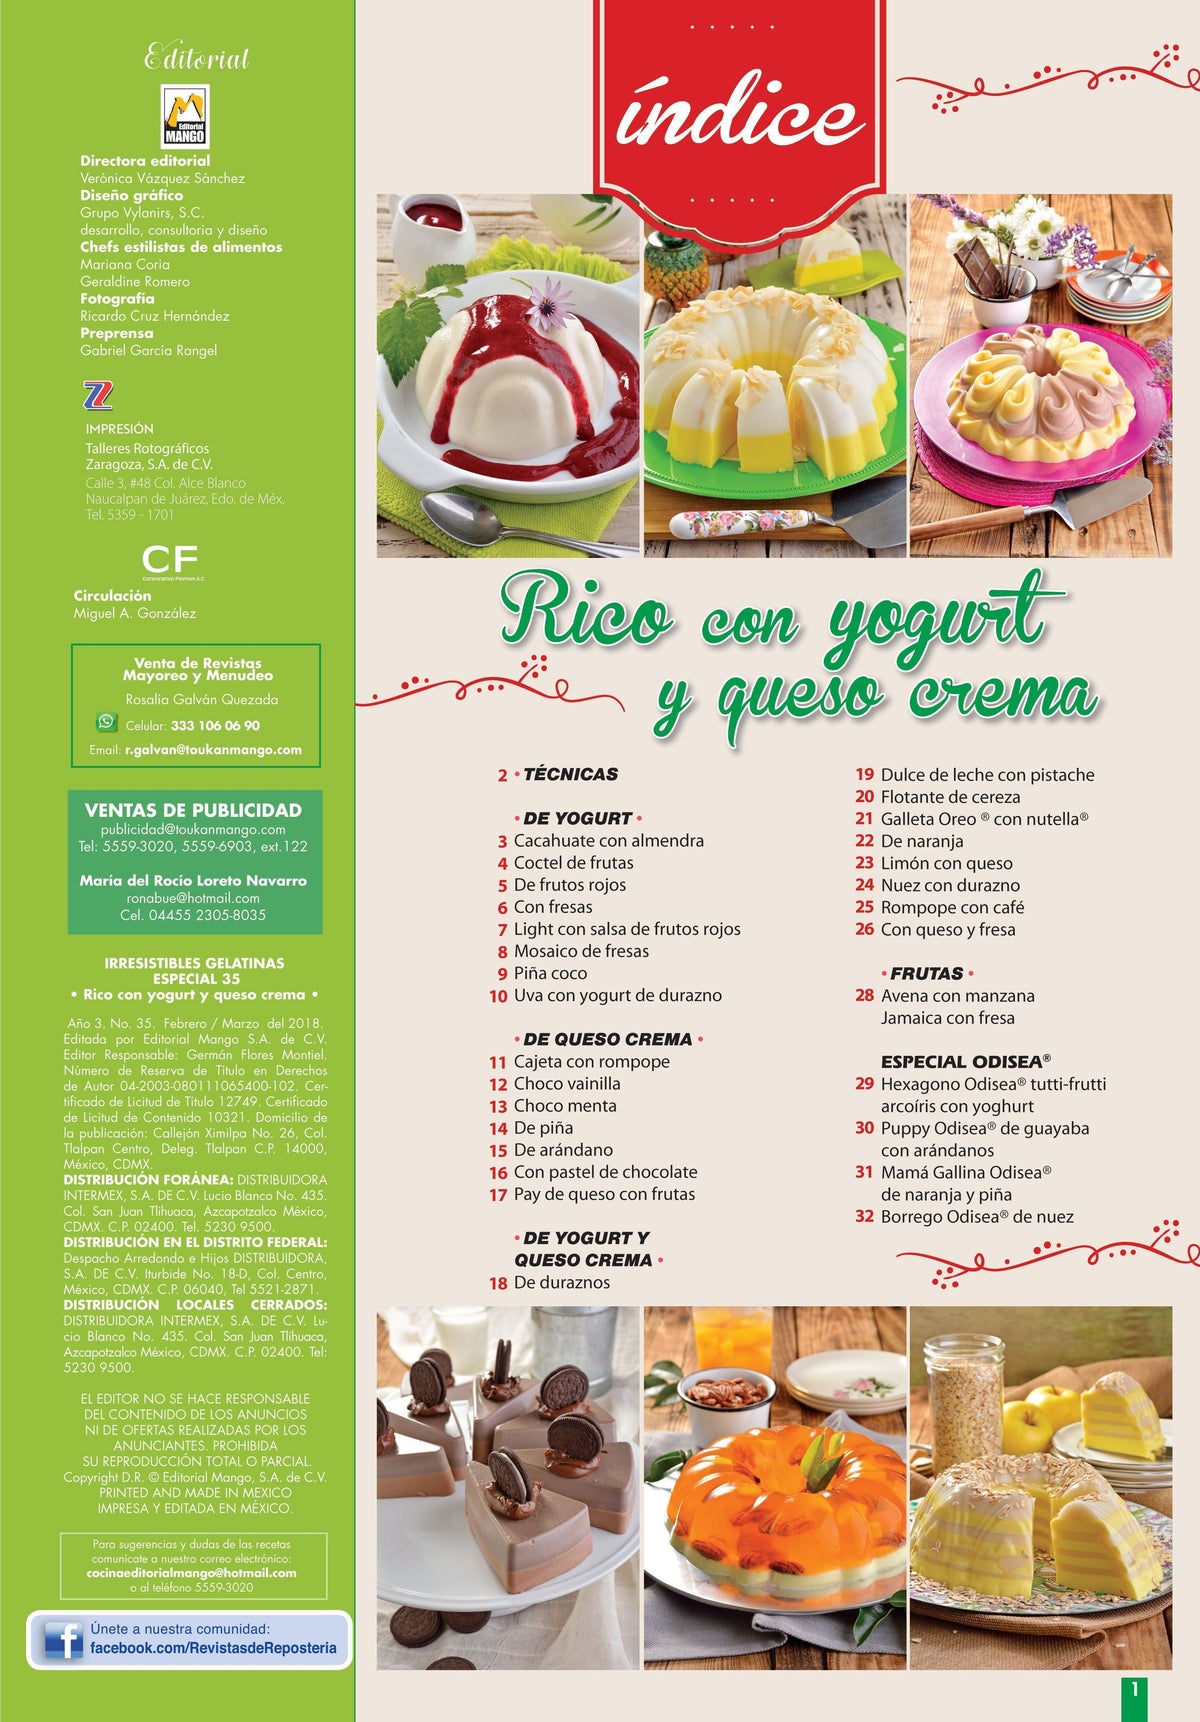 Irresistibles Gelatinas Especial No. 35 - Rico con yogurt y queso crema - Formato Digital - ToukanMango